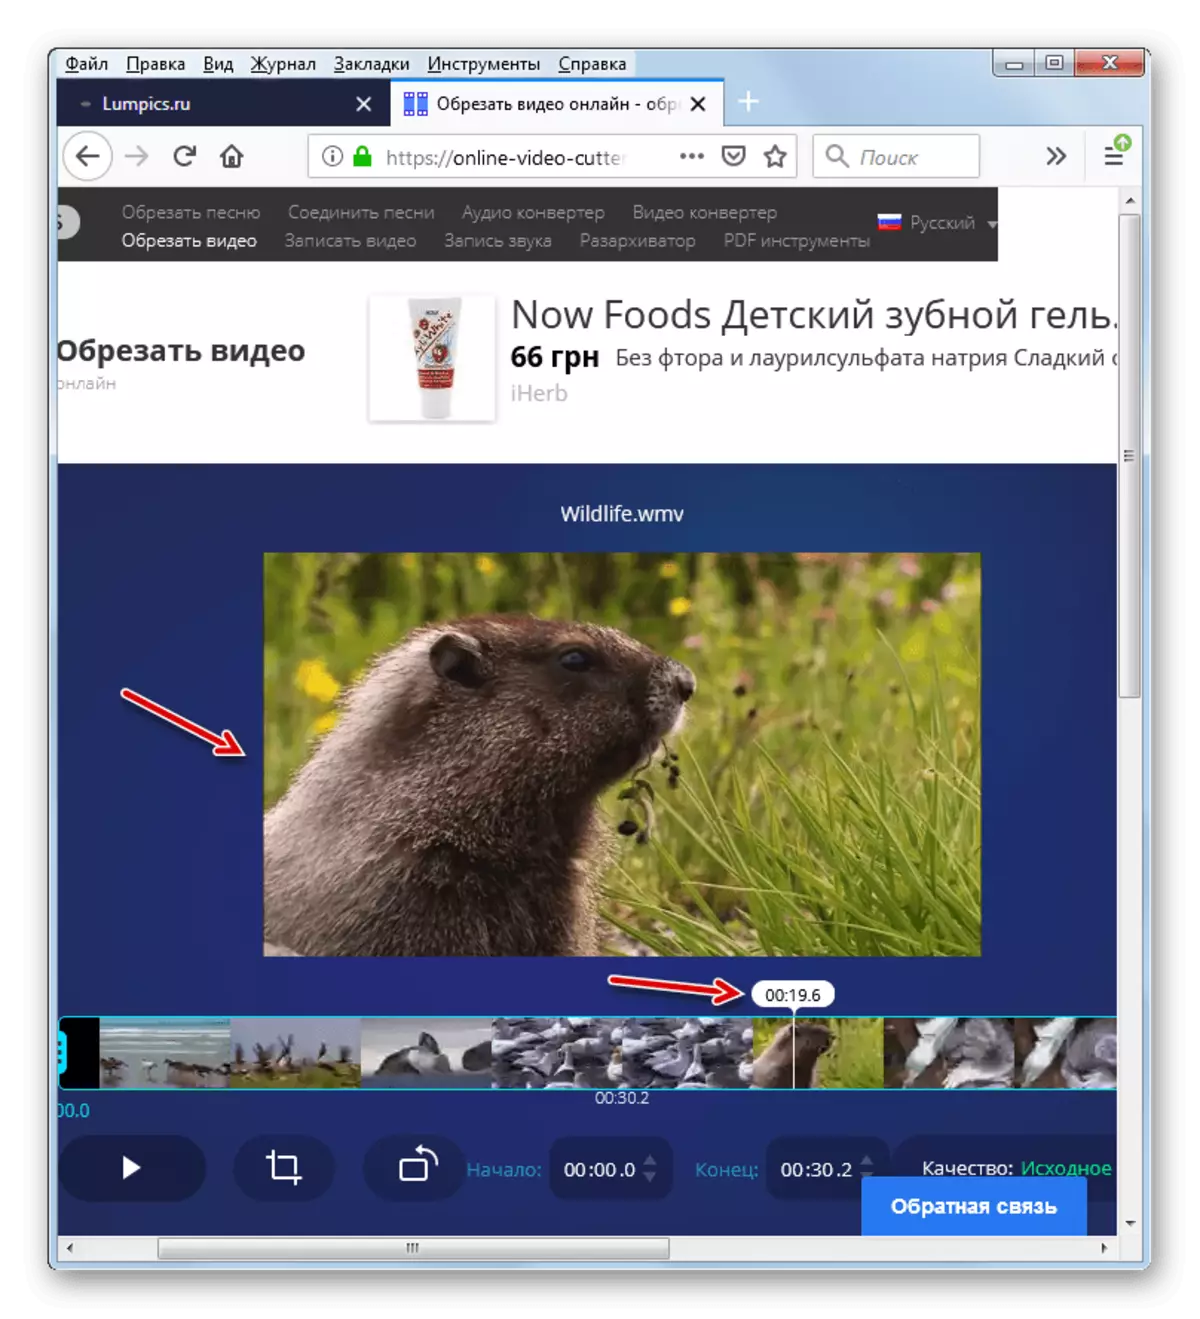 Mozilla Firefox ဝက်ဘ်ဘရောက်ဇာတွင်အချိန်အမှတ်အသားအွန်လိုင်းဗီဒီယိုရှုးအတွက် frame တစ်ခုကိုရွေးချယ်ခြင်း